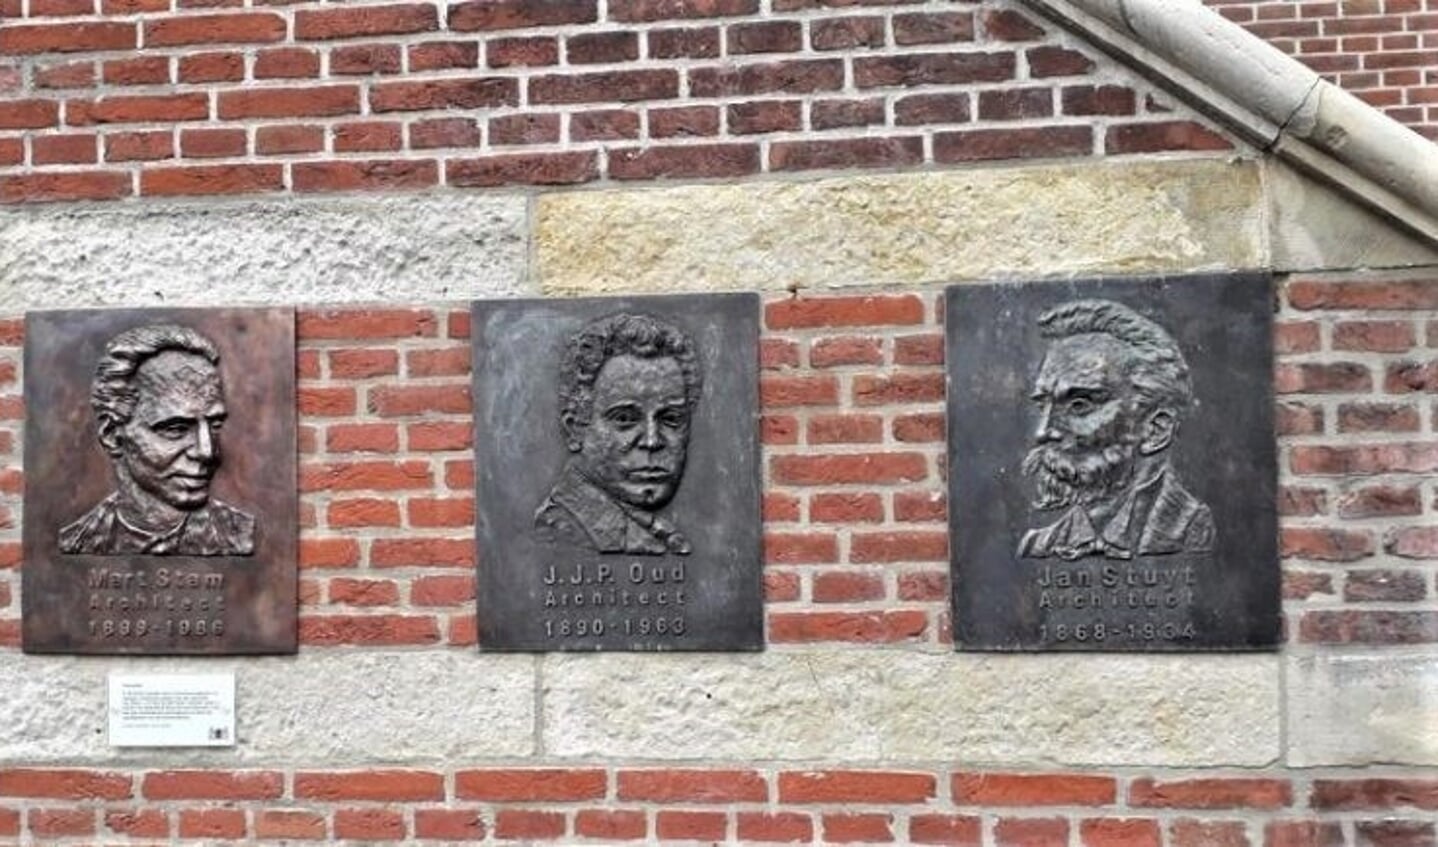 De plaquettes van de drie architecten hangen aan de gevel van het Purmerends Museum.